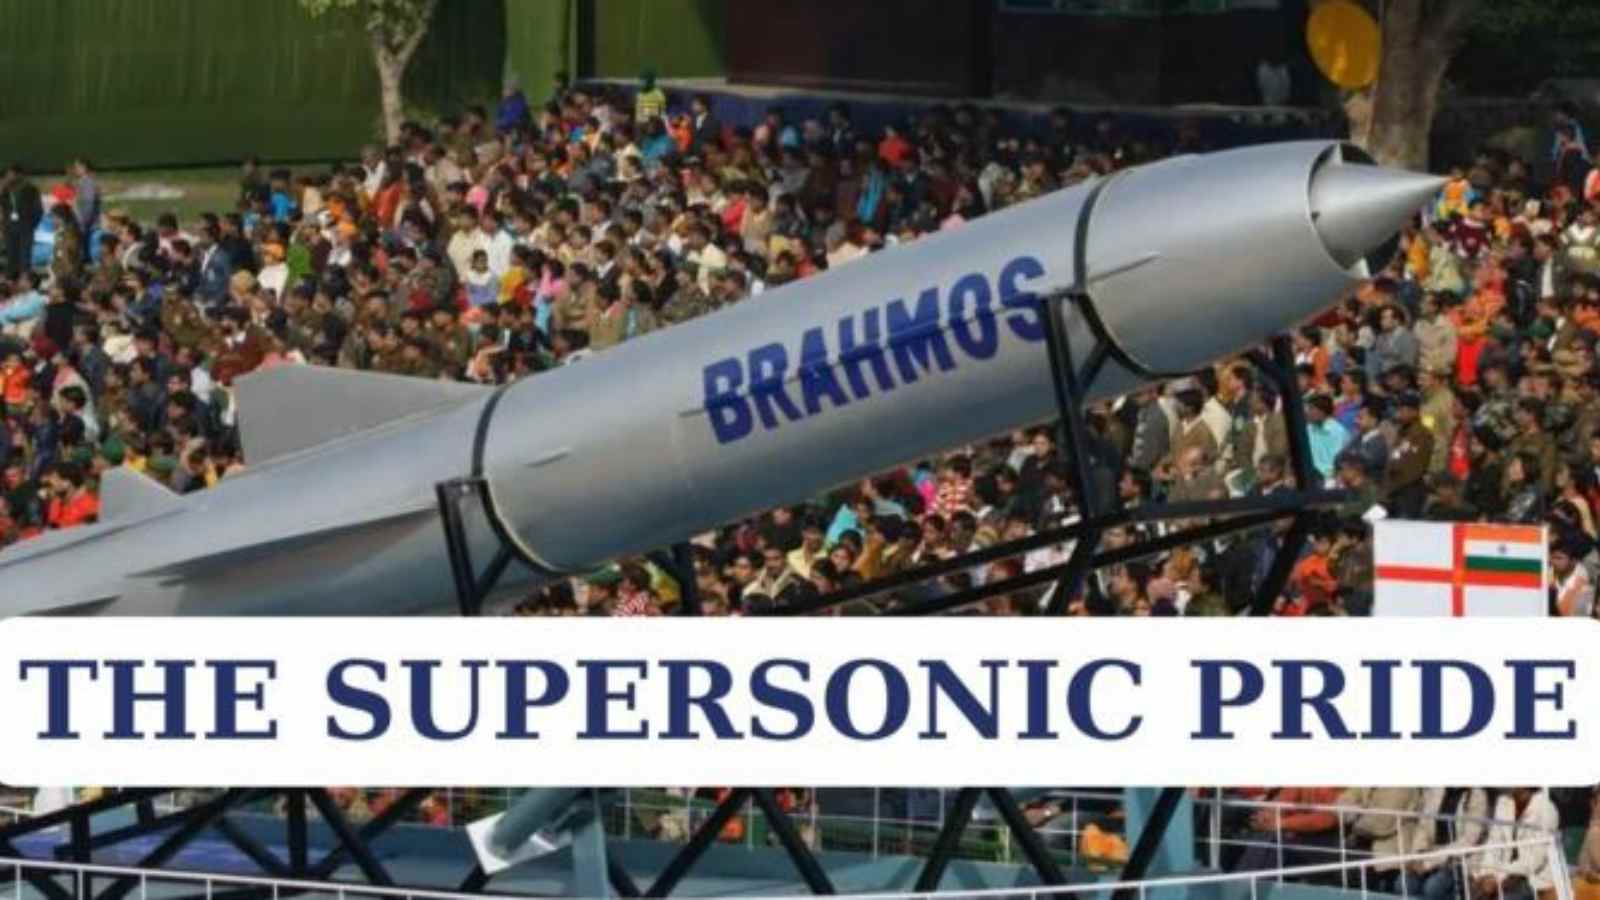 BrahMos 26th anniversary, BrahMos, BrahMos missile